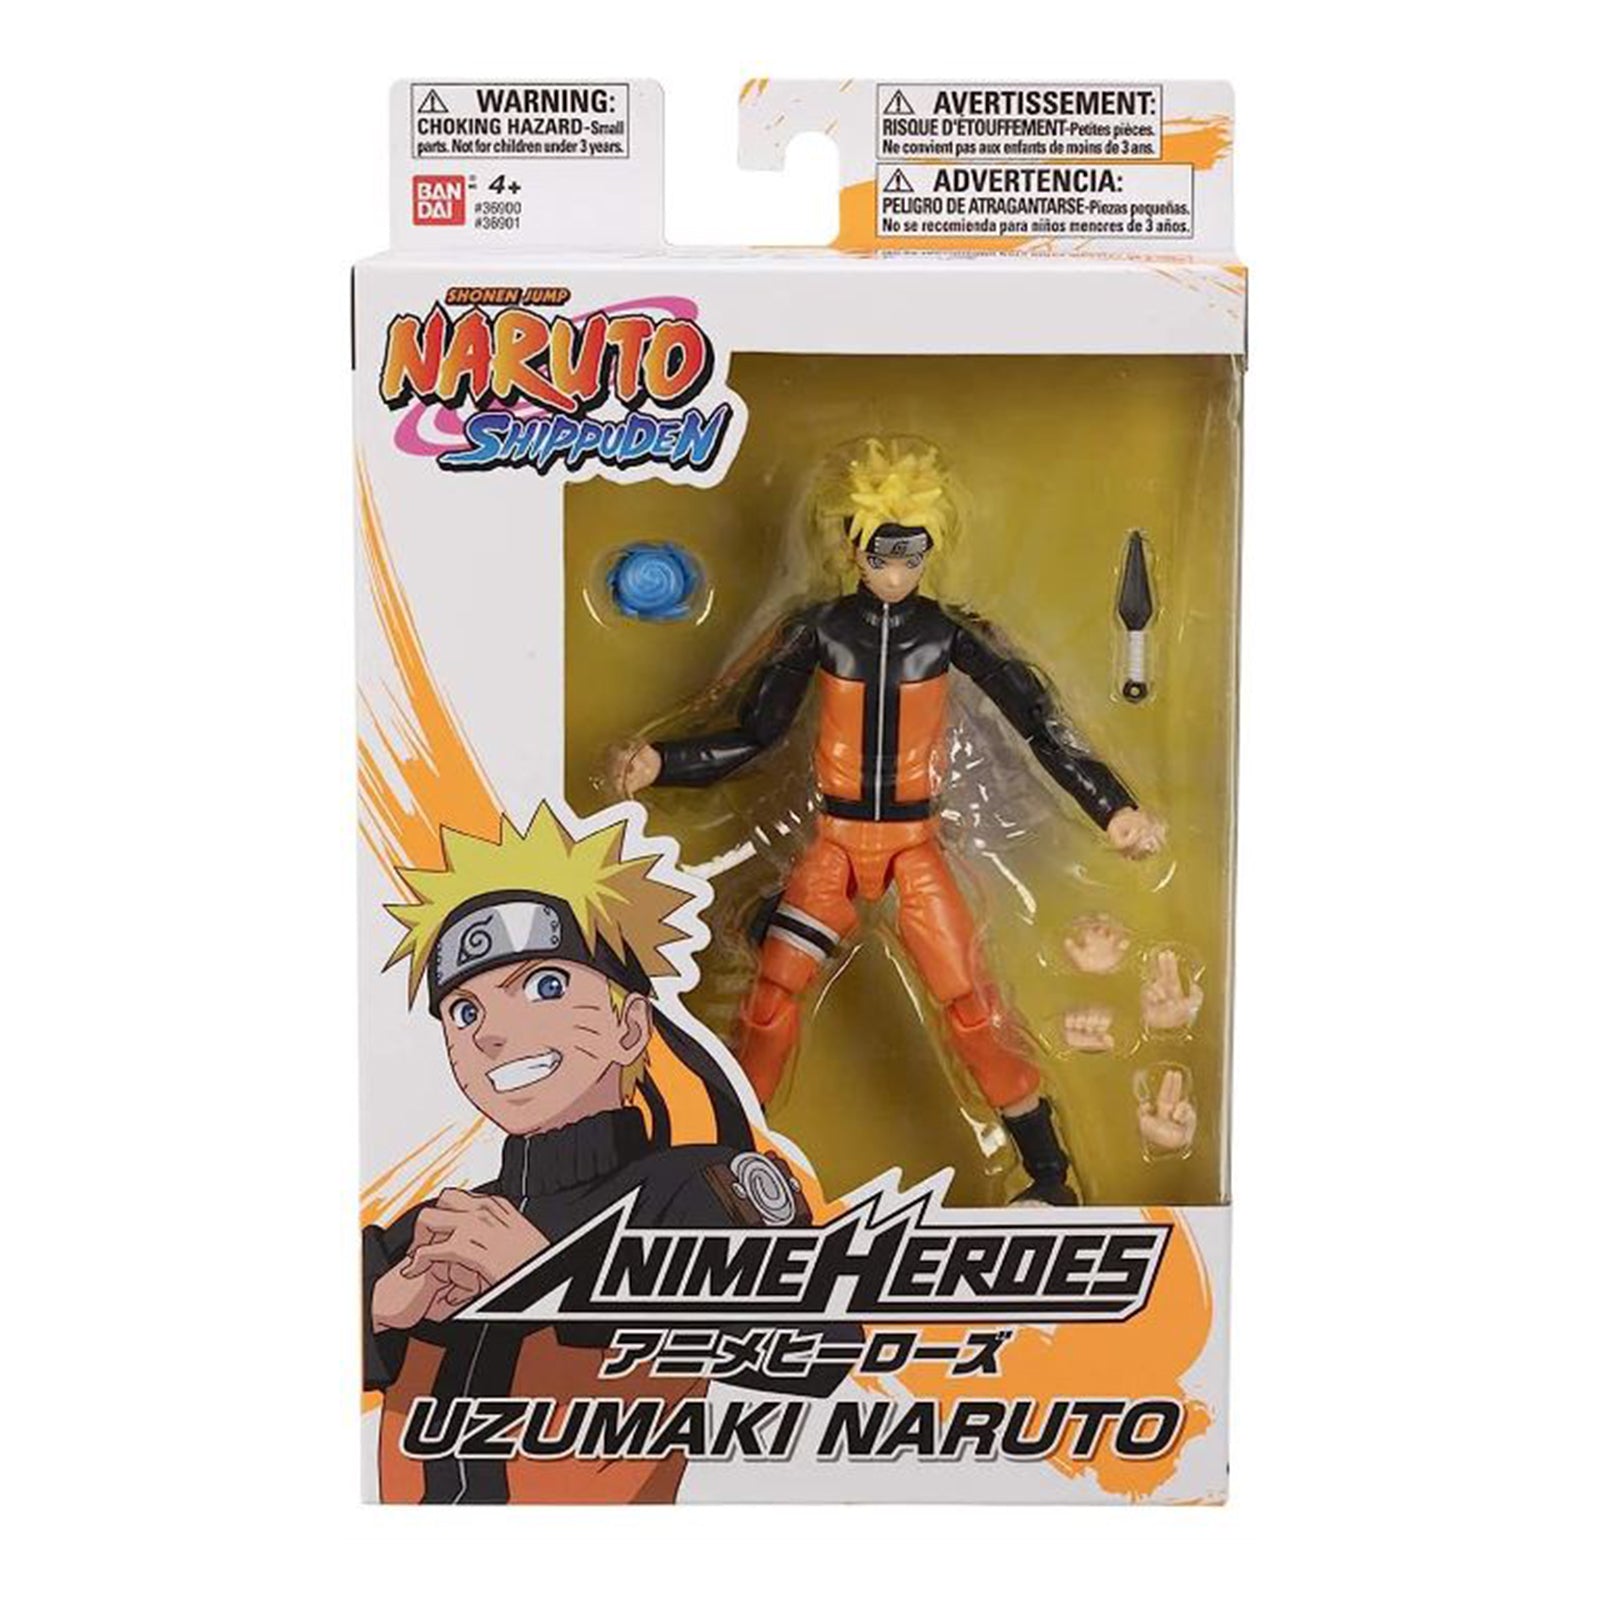  ANIME HEROES - Naruto - Naruto Uzumaki Sage Mode